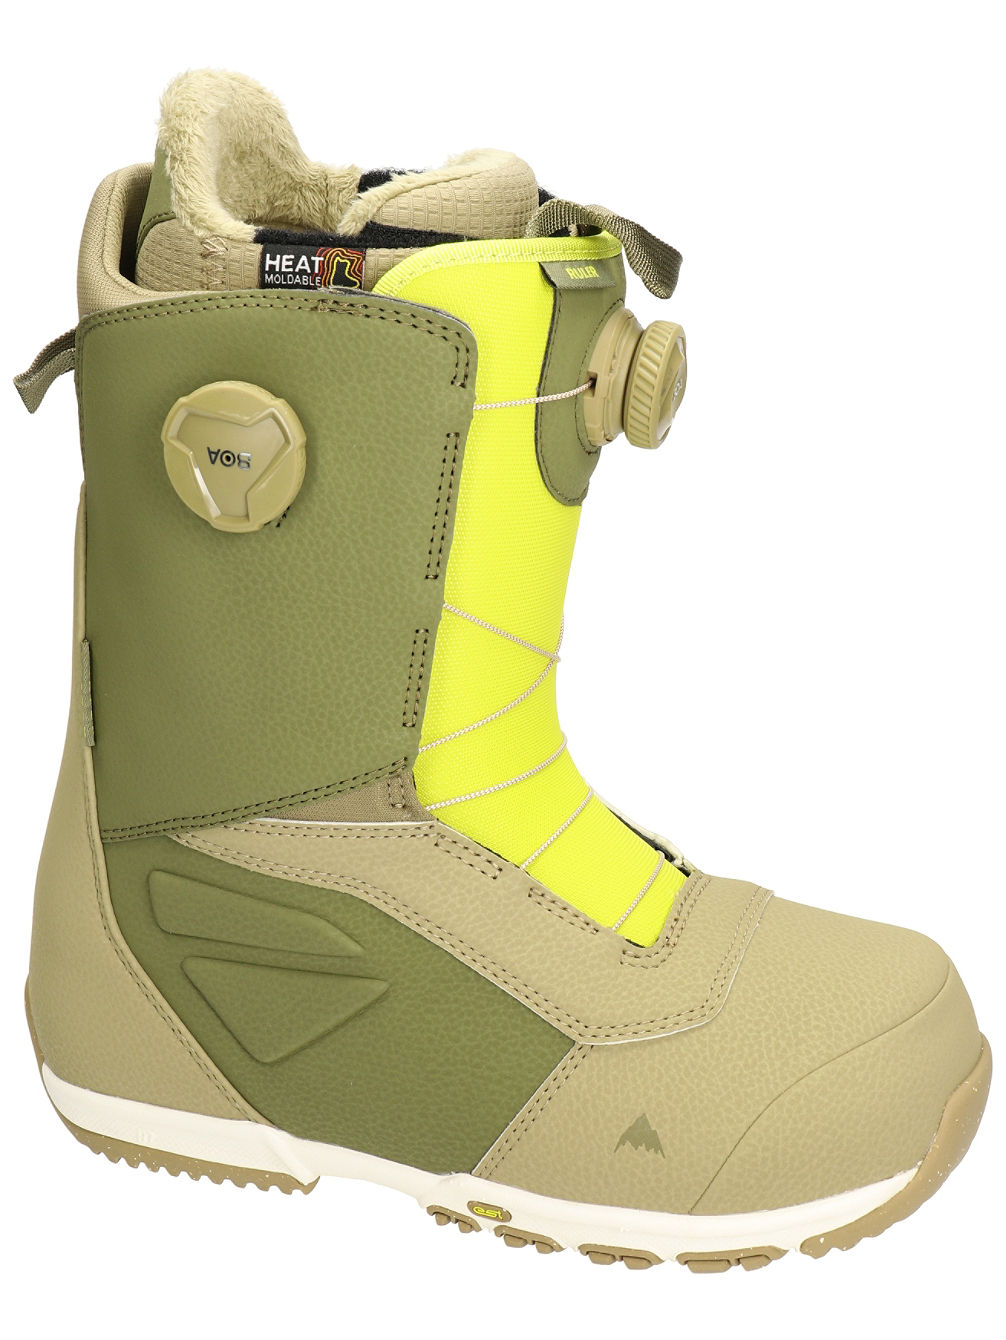 Ruler BOA 2022 Snowboard-Boots